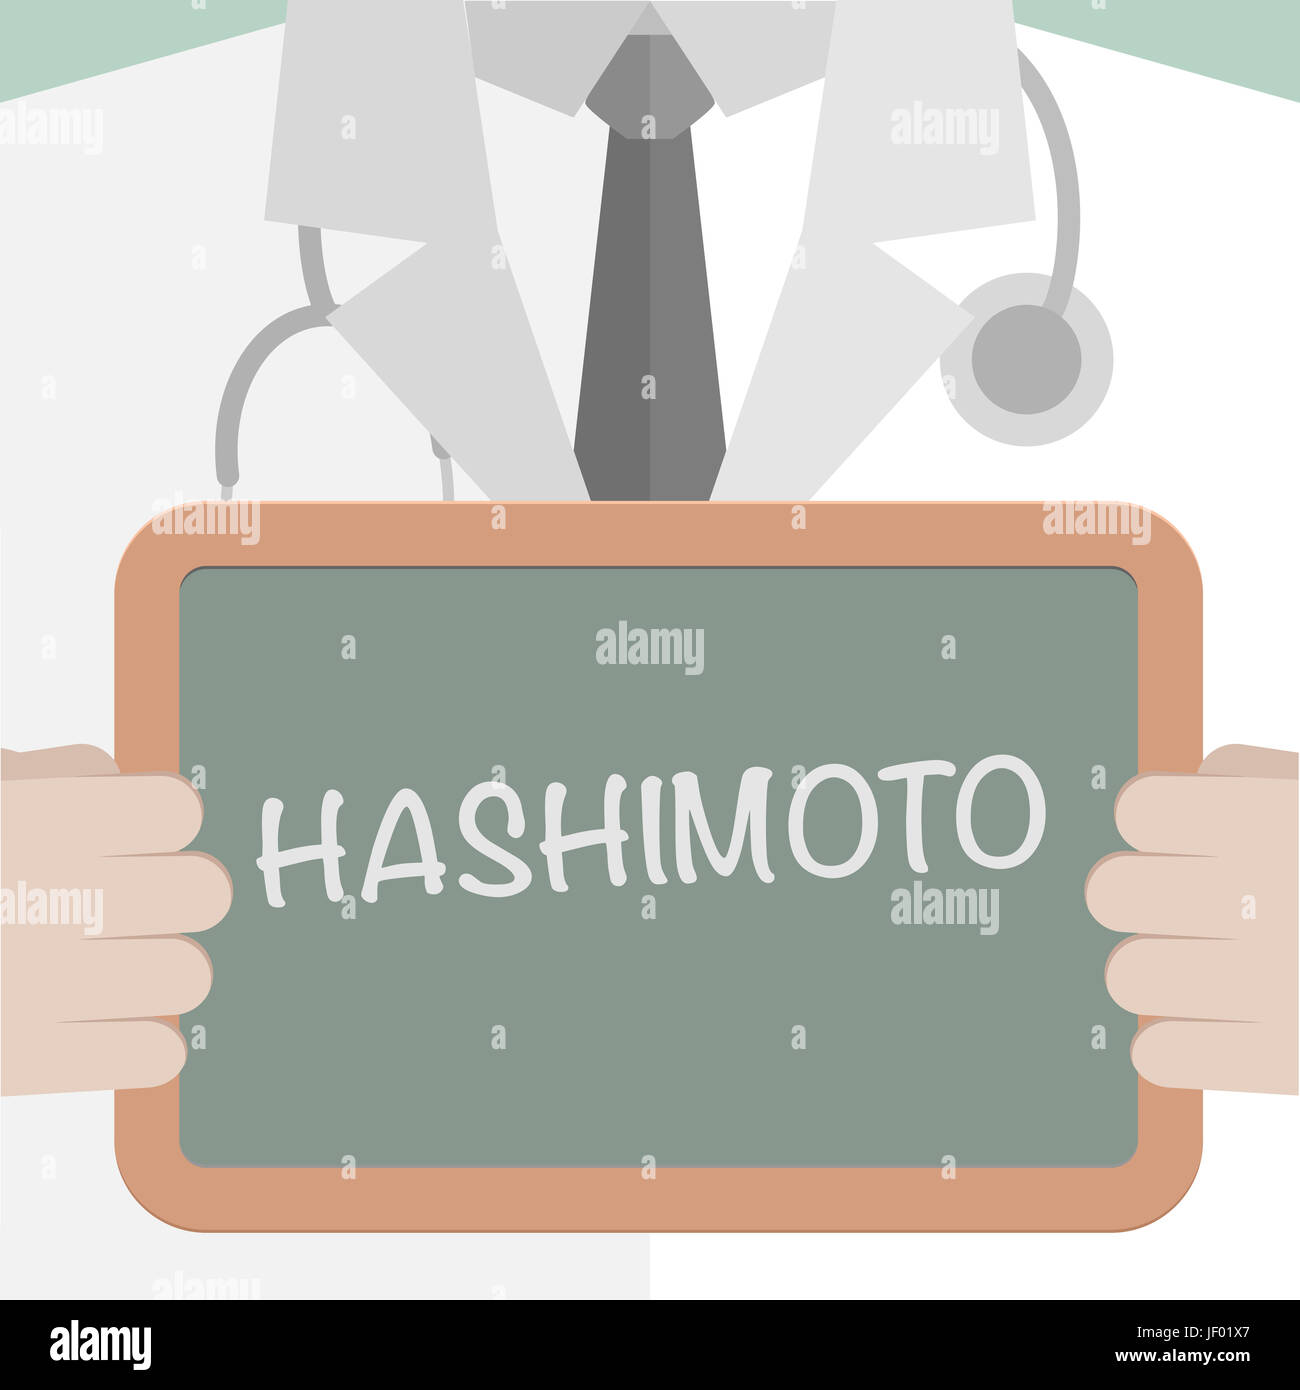 Scheda medica Hashimoto Foto Stock